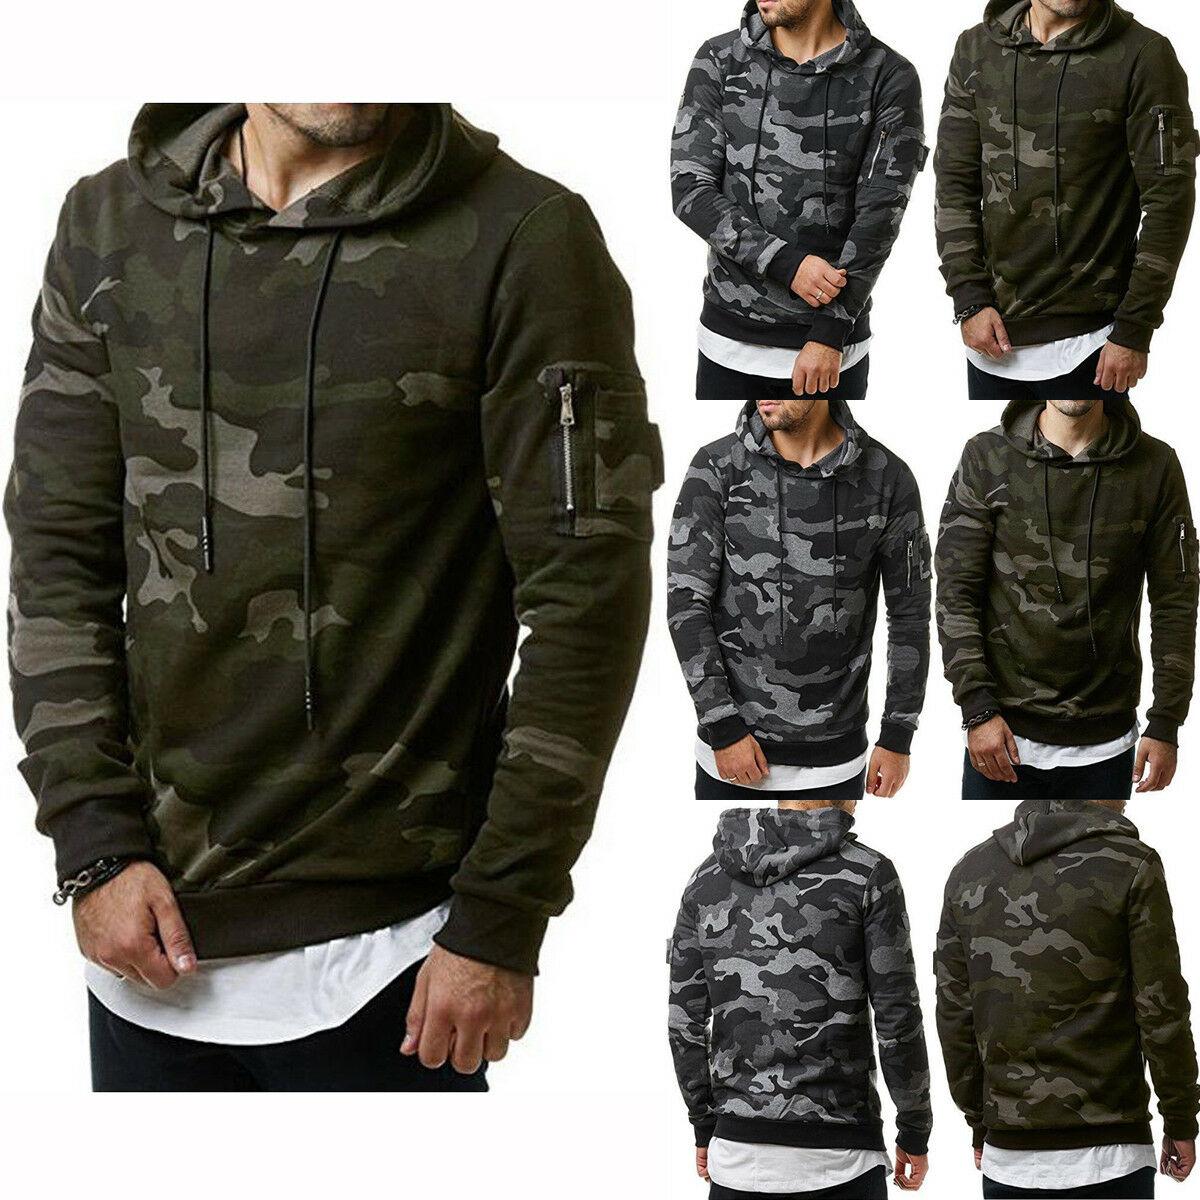 Men’s Fleece Warm Hoodie Hooded Camouflage Sweatshirt Pullover Coat Tops Jacket